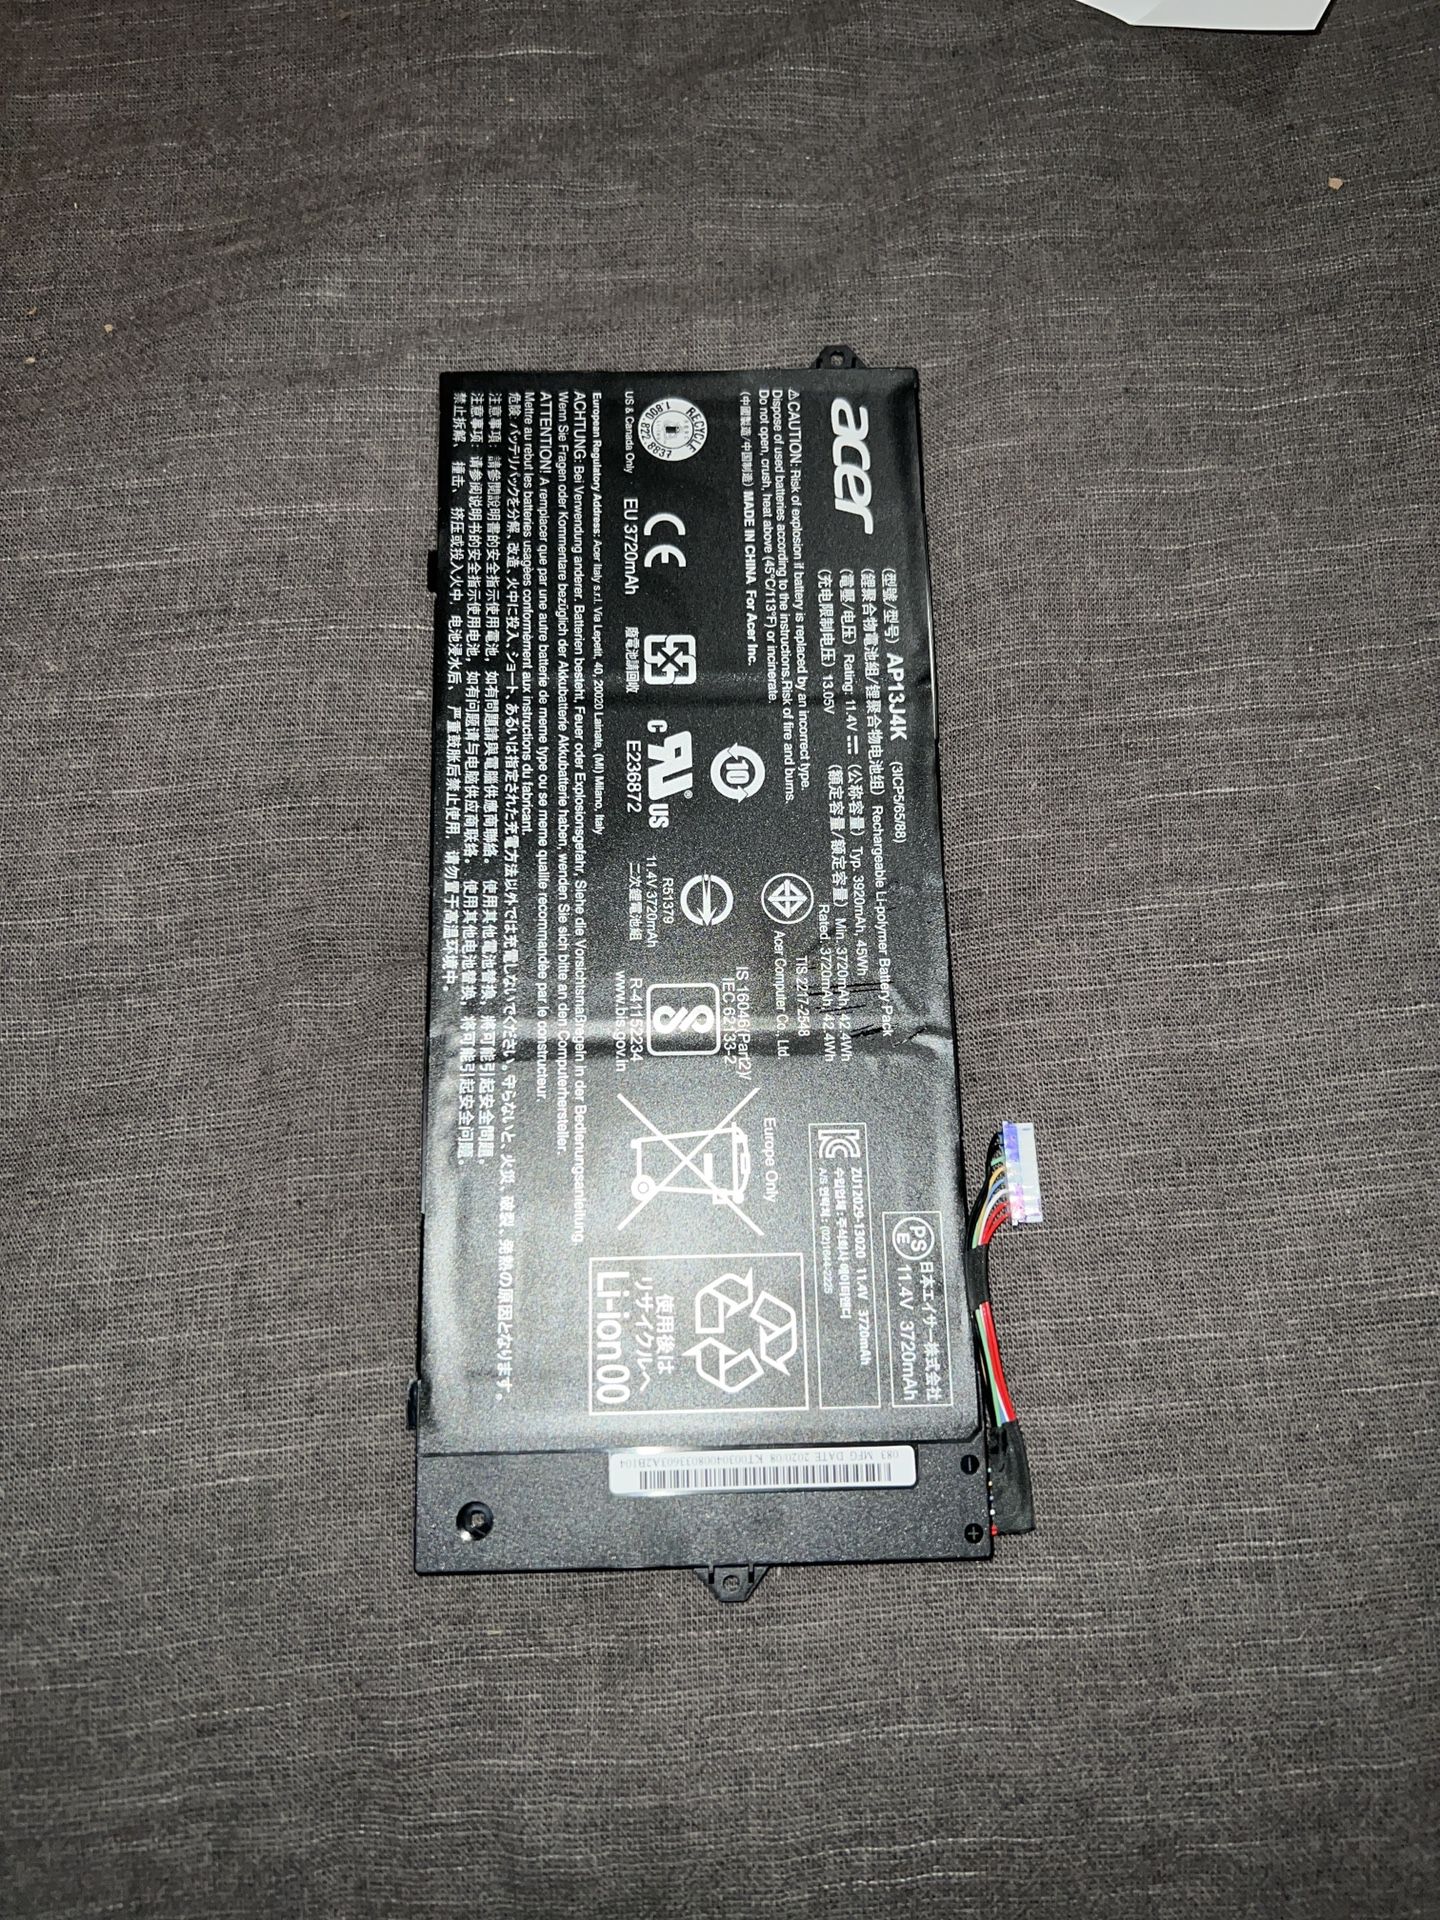 AP13J4K Battery for Acer Chromebook 11.6" C720 C740 C720-2848 14 CB3-431 F